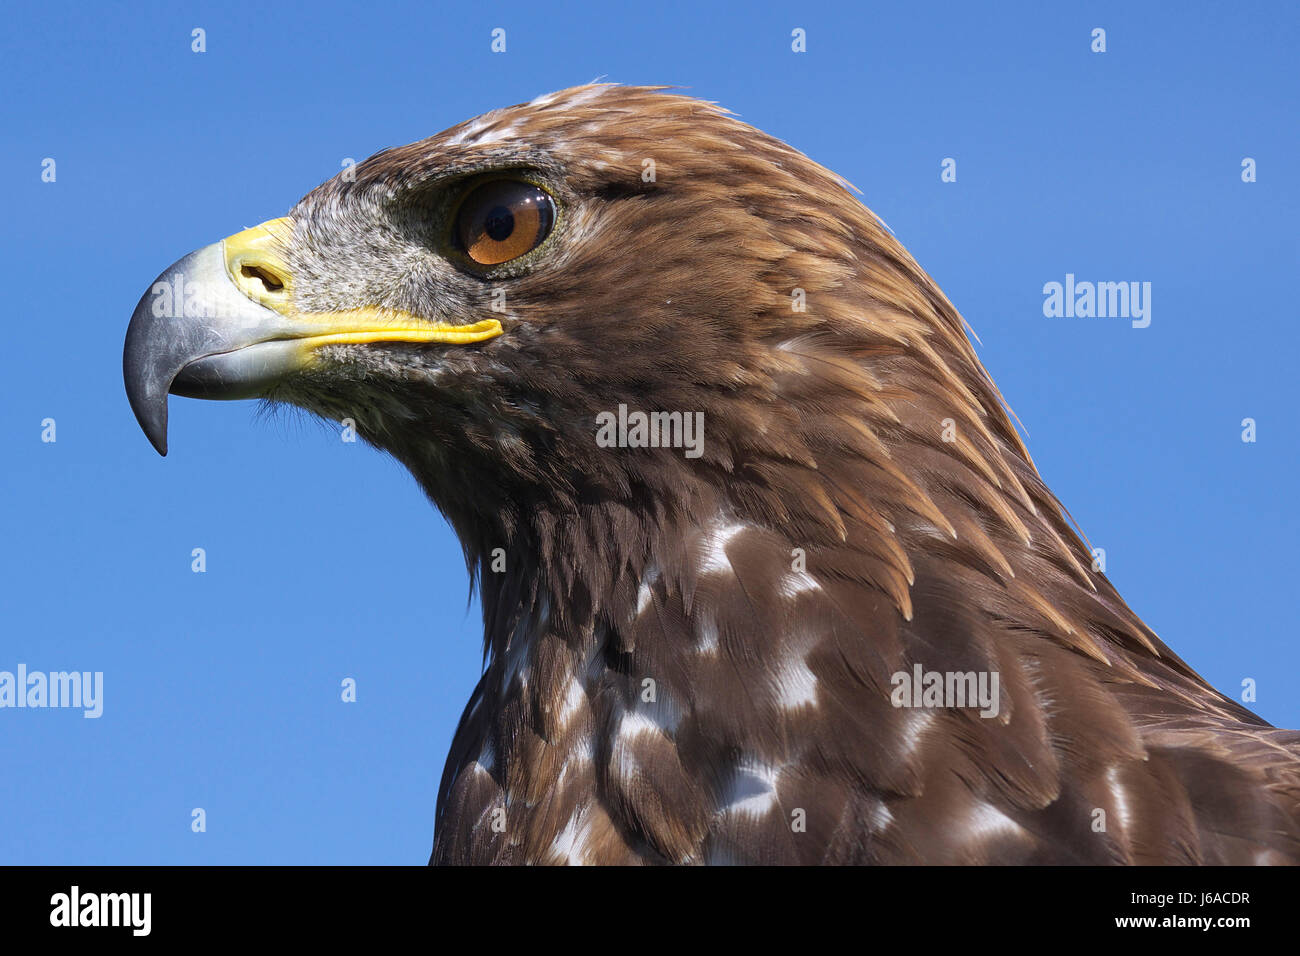 Portrait d'oiseaux plumes oiseaux oiseau prédateur vol rob eagle strong portrait Banque D'Images